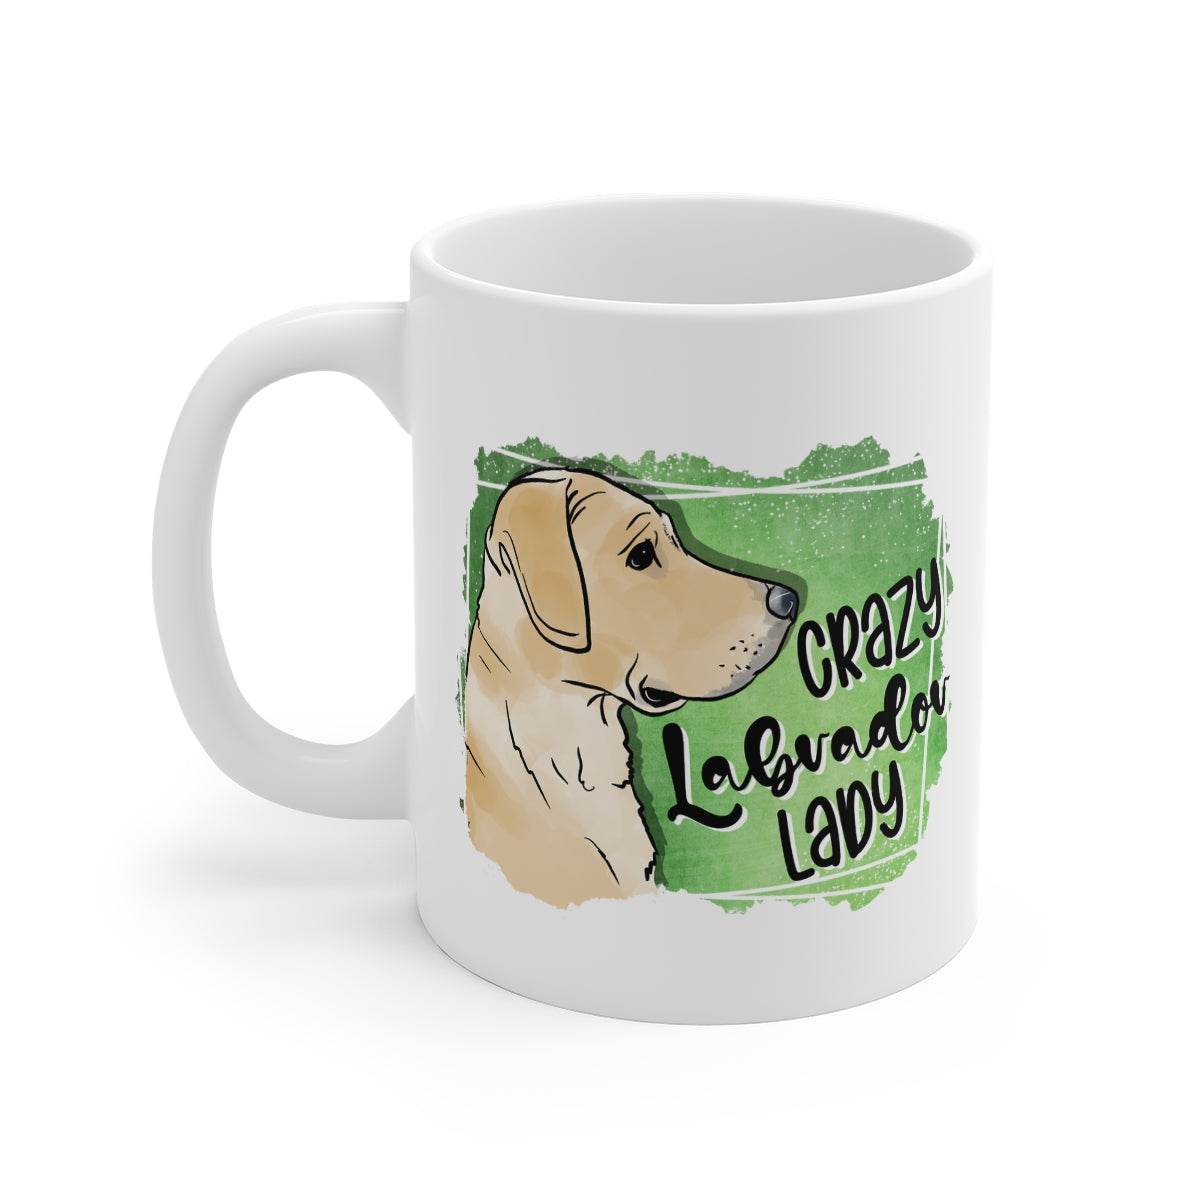 Crazy Labrador Lady Coffee Mug